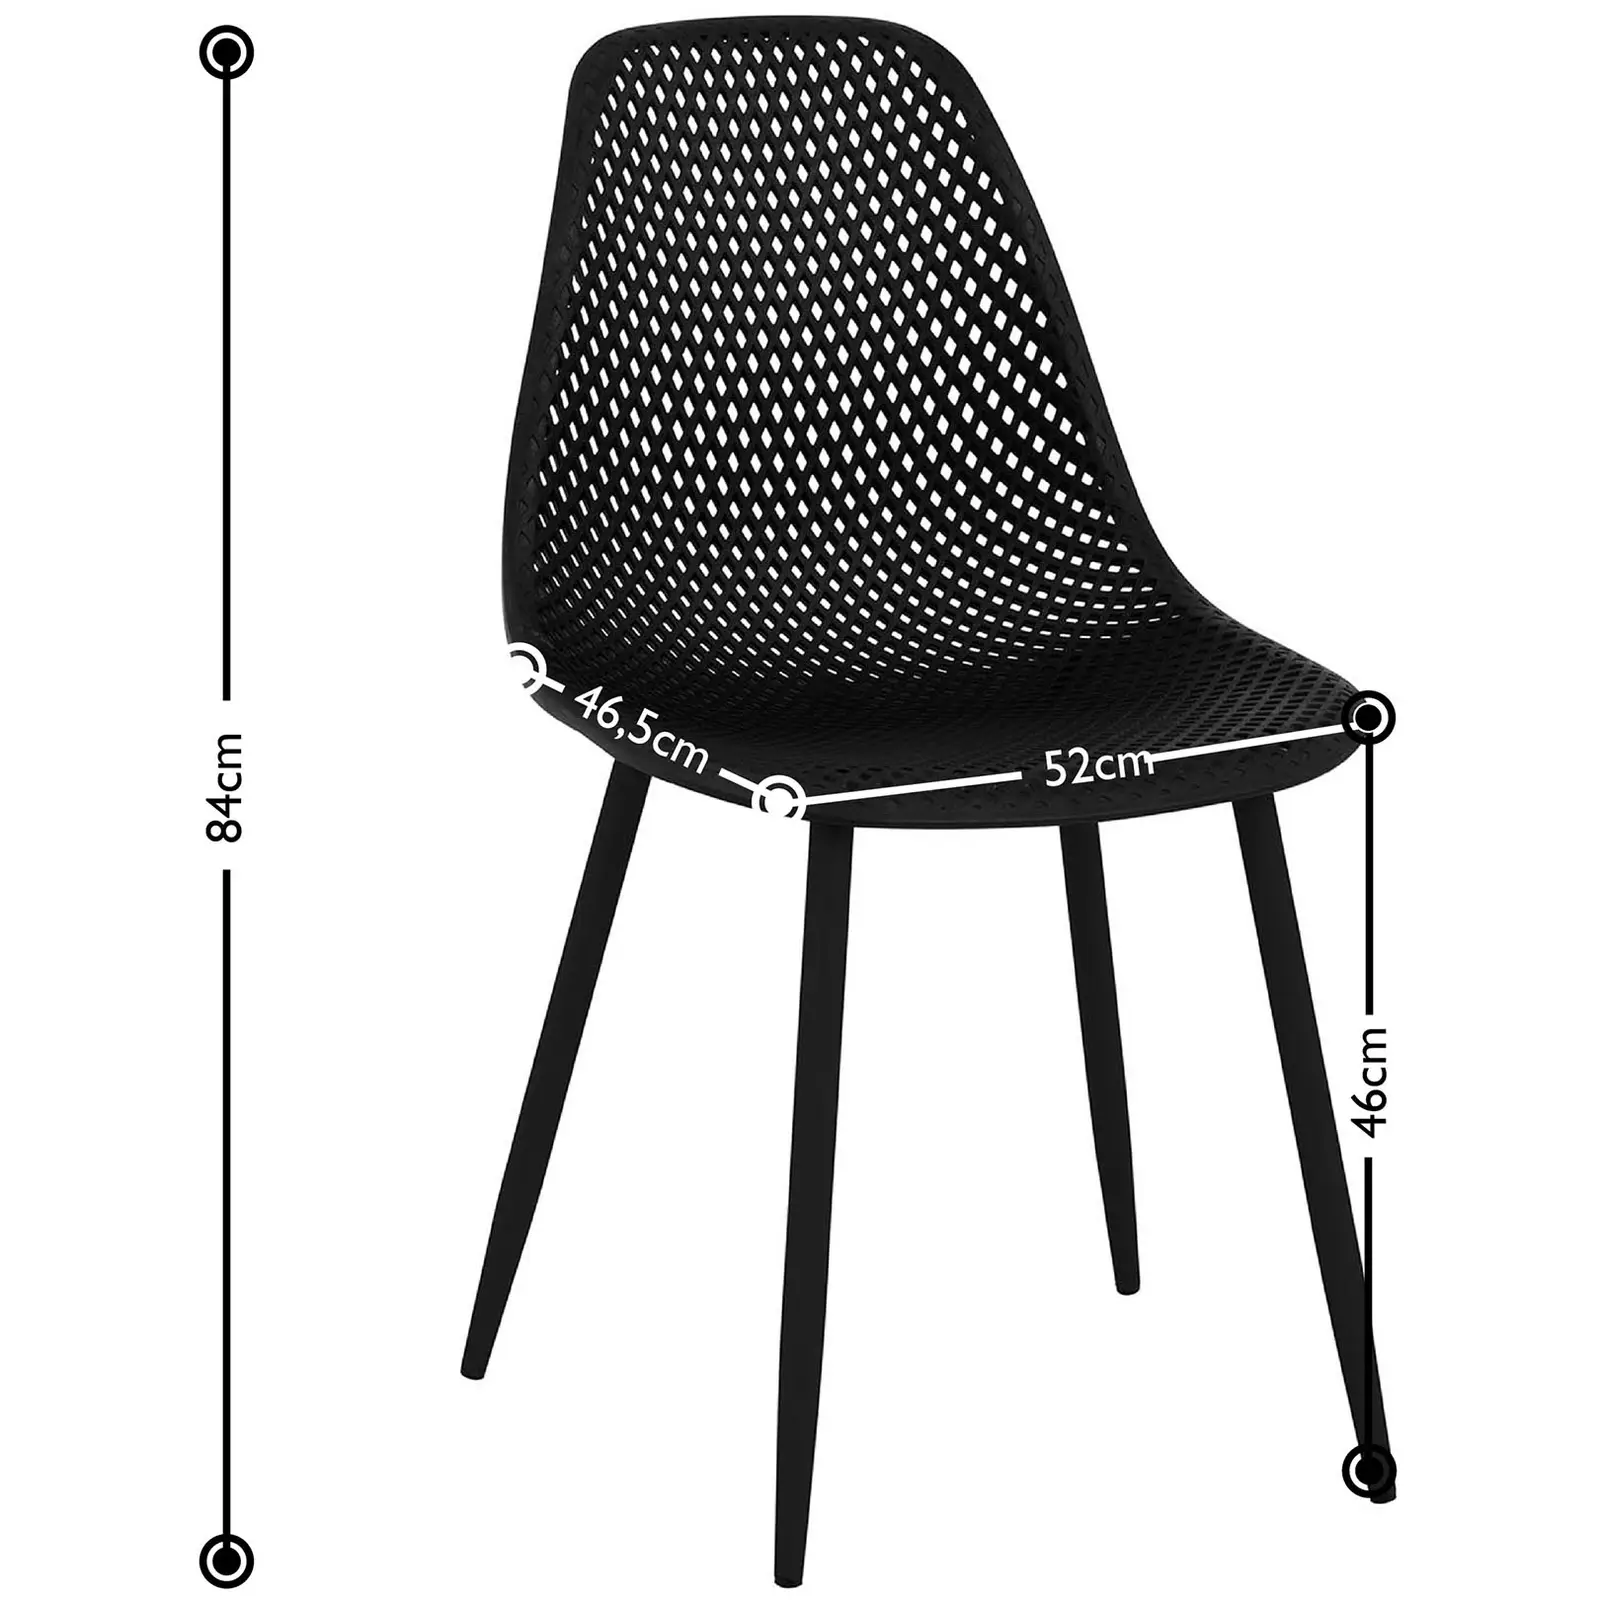 Chaise - Lot de 4 - 150 kg max. - Surface d'assise de 52 x 46,5 cm - Coloris noir - 7